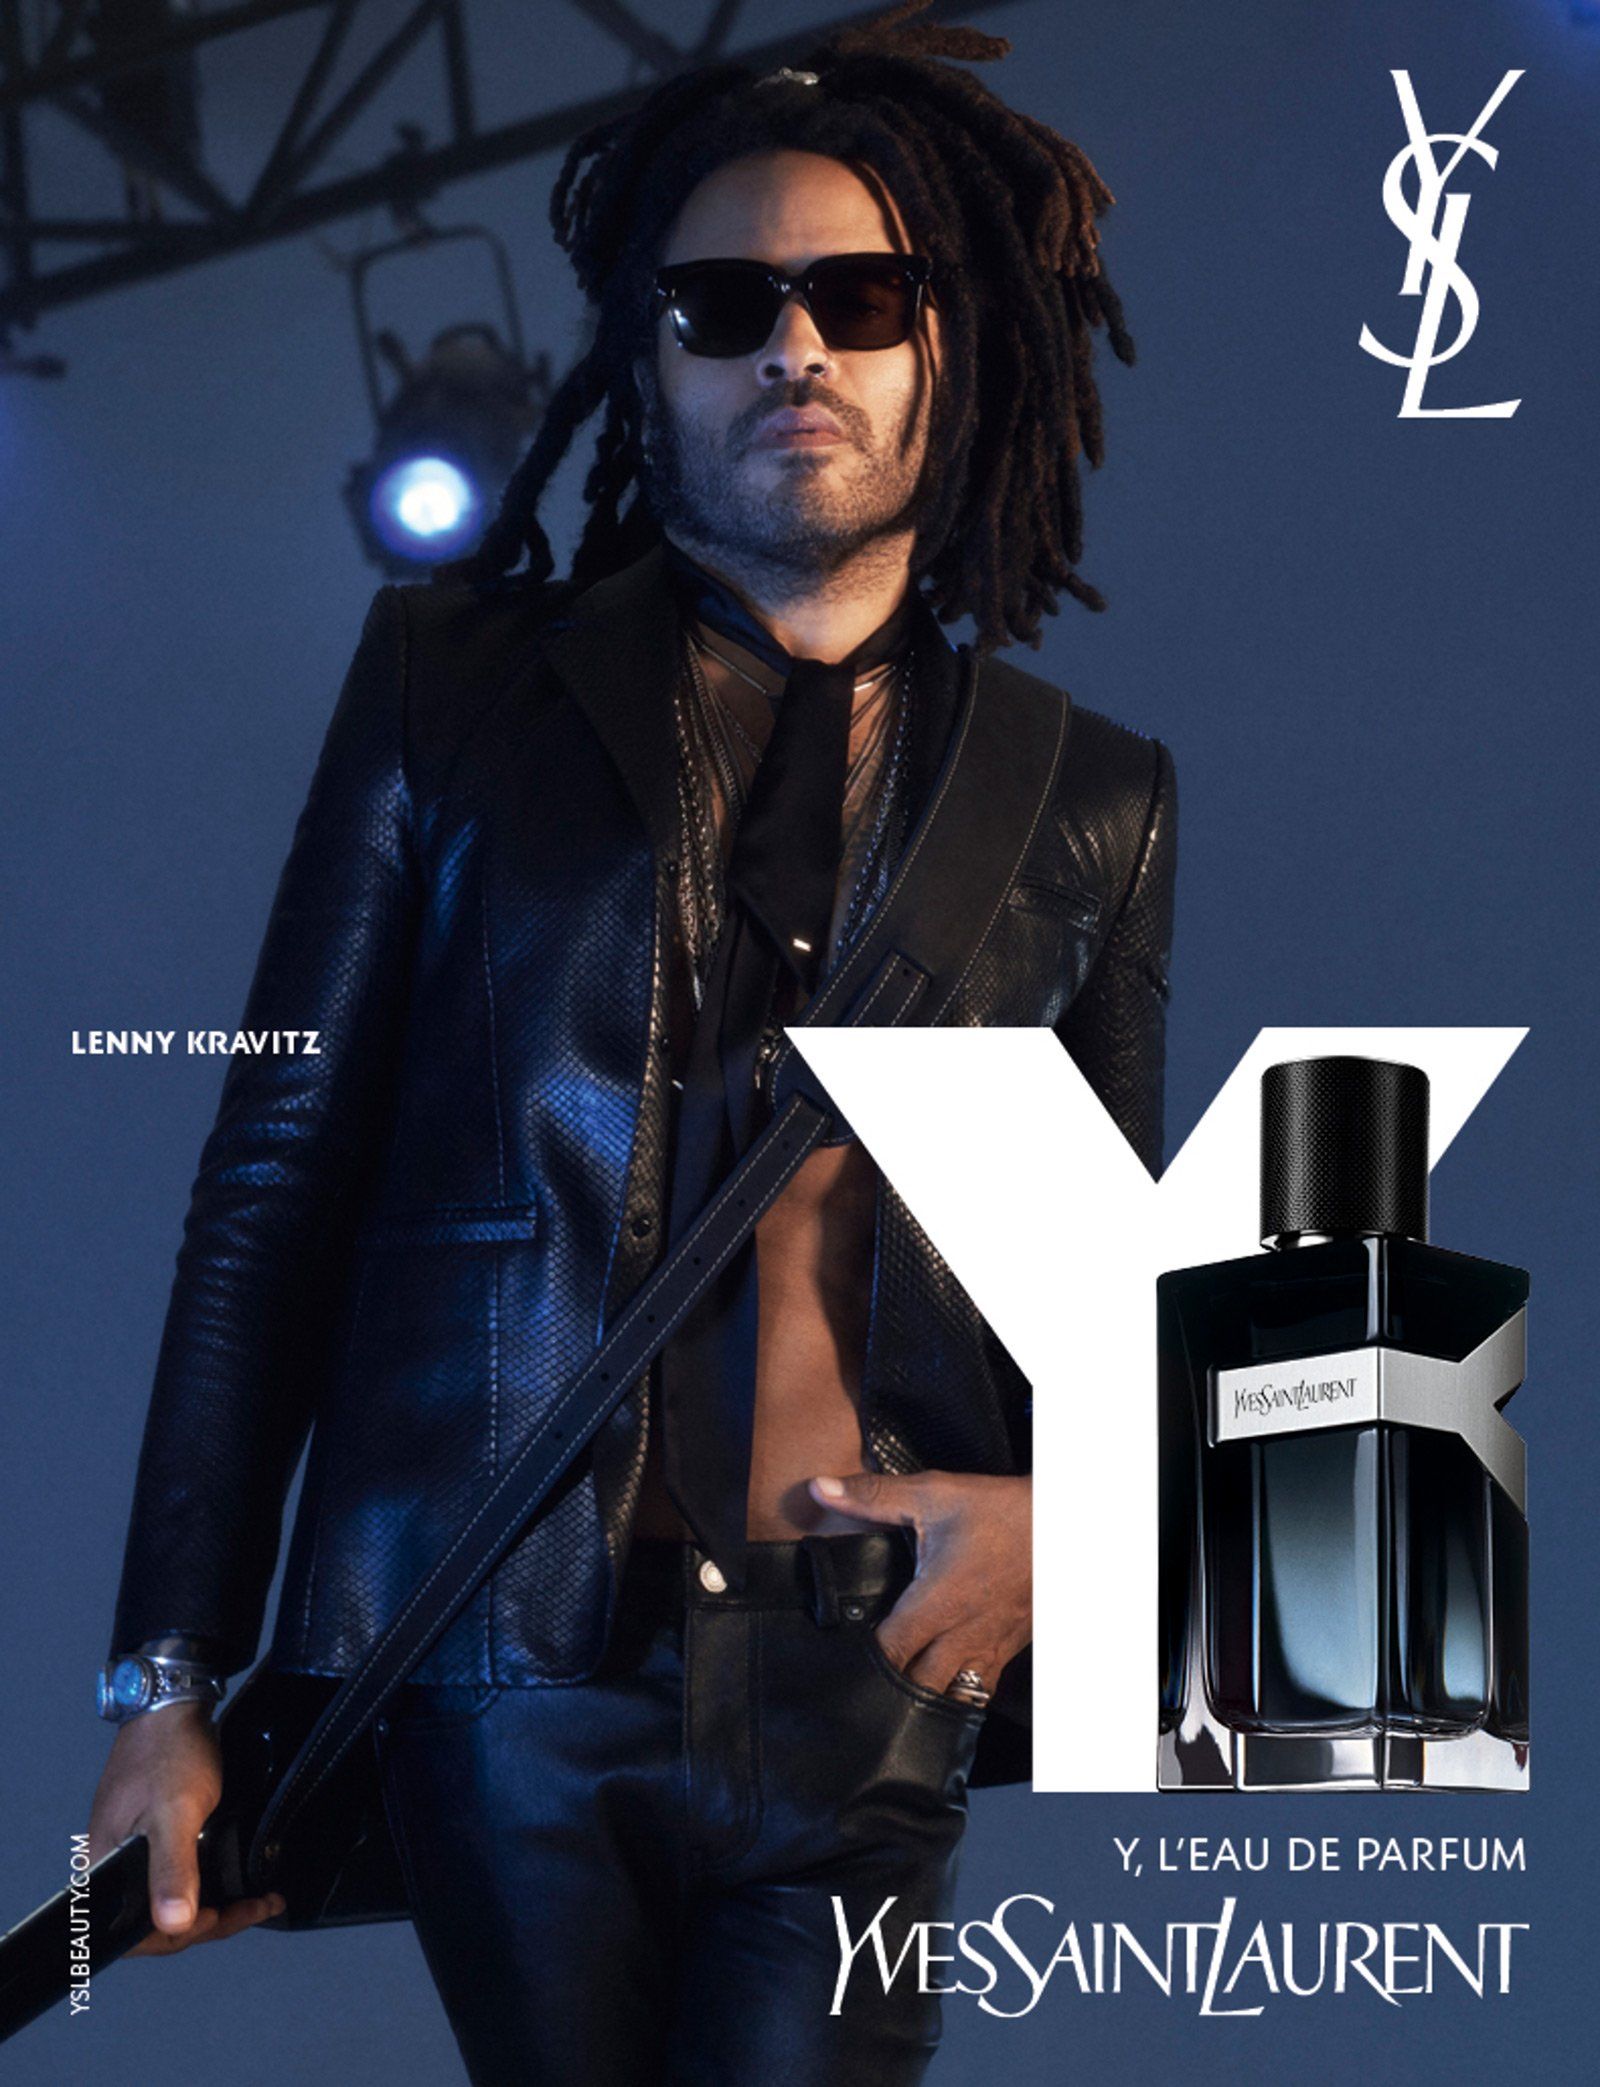 Y Eau de Parfum Yves Saint Laurent cologne - a new fragrance for men 2018